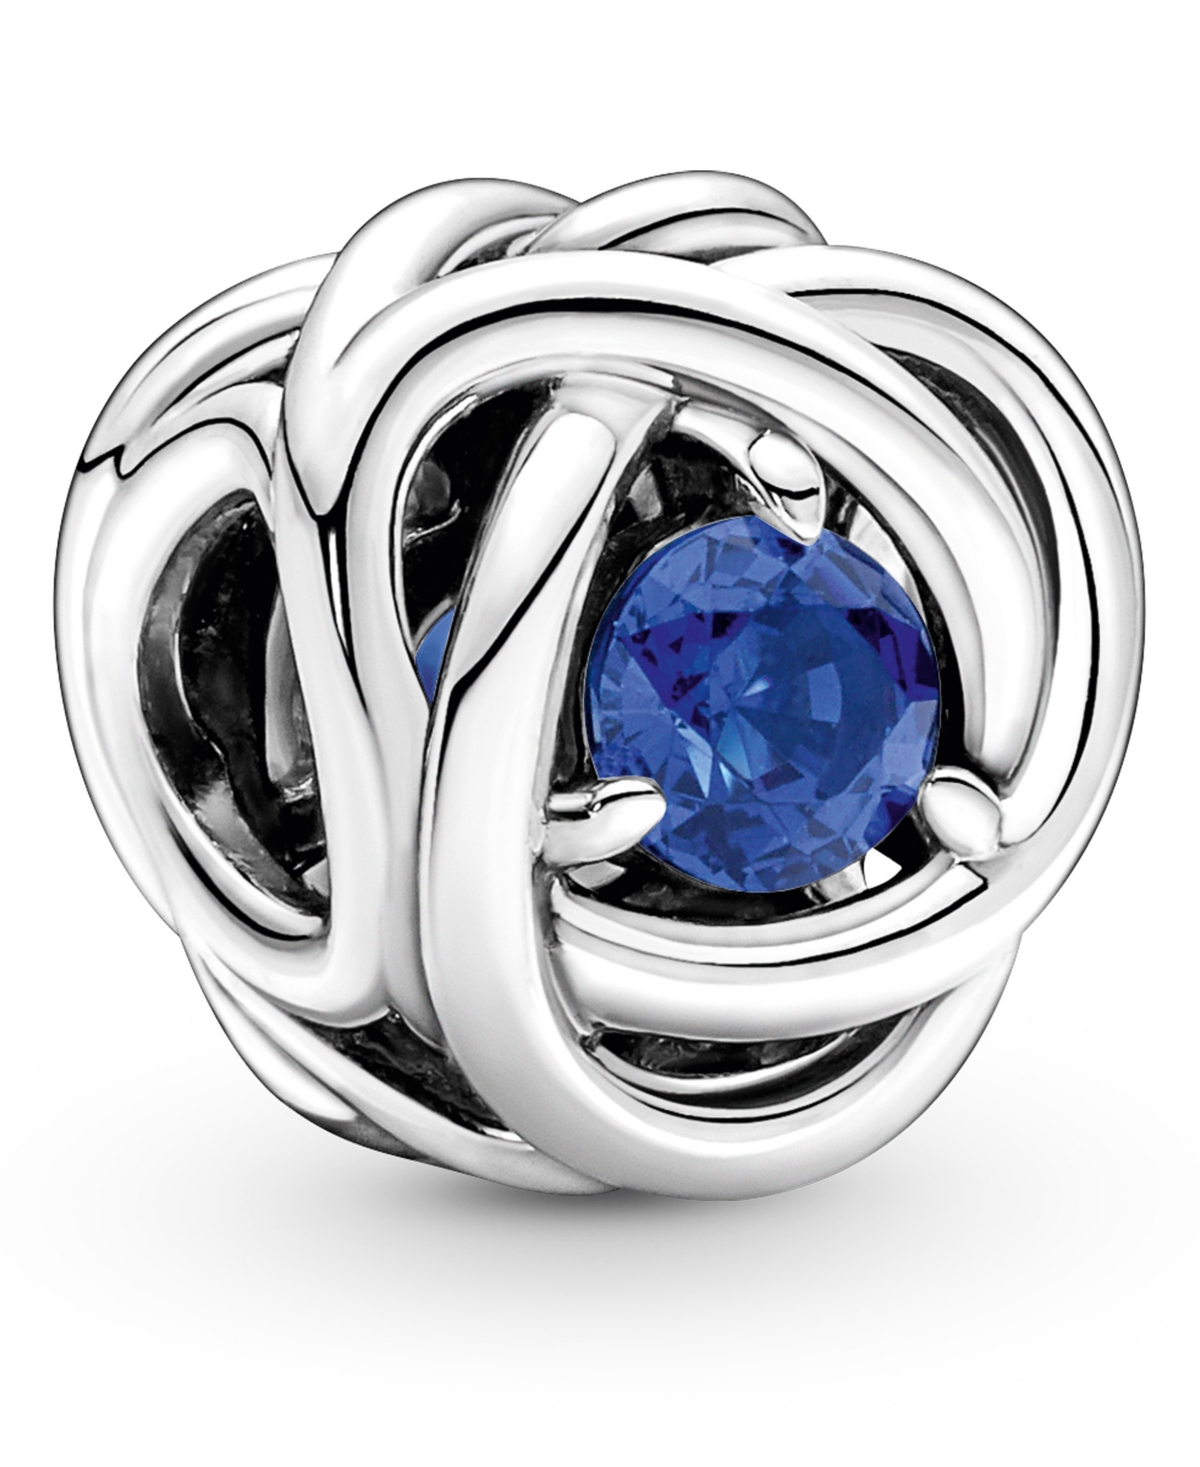 Pandora Birthstone Crystals Eternity Circle Charm In Blue,aquamarine - March